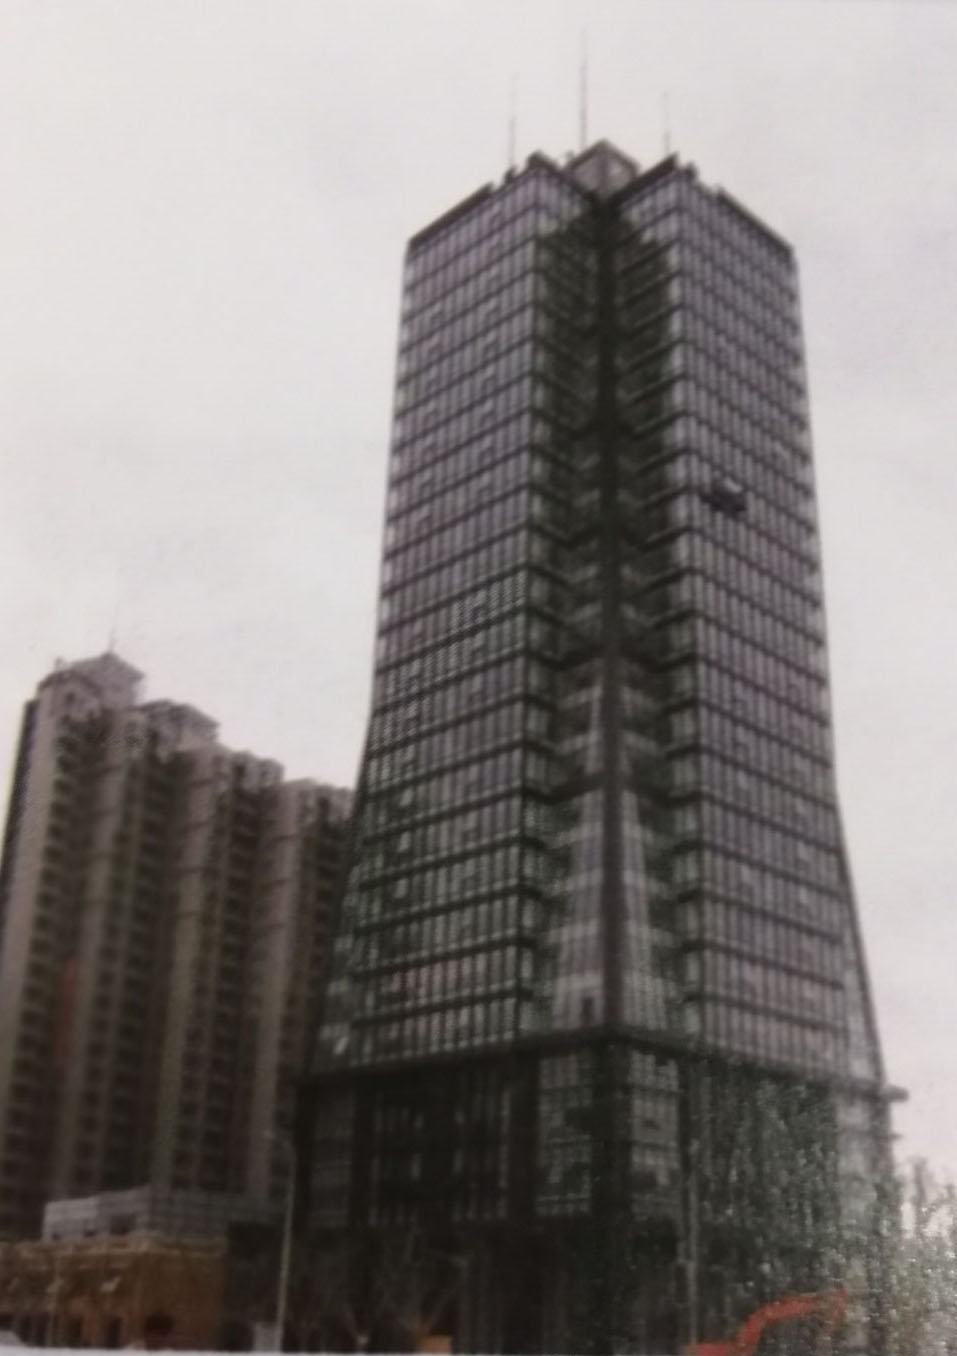 上海加固公司,上海碳纤维加固,房屋建筑加固,建筑加固公司,碳纤维加固